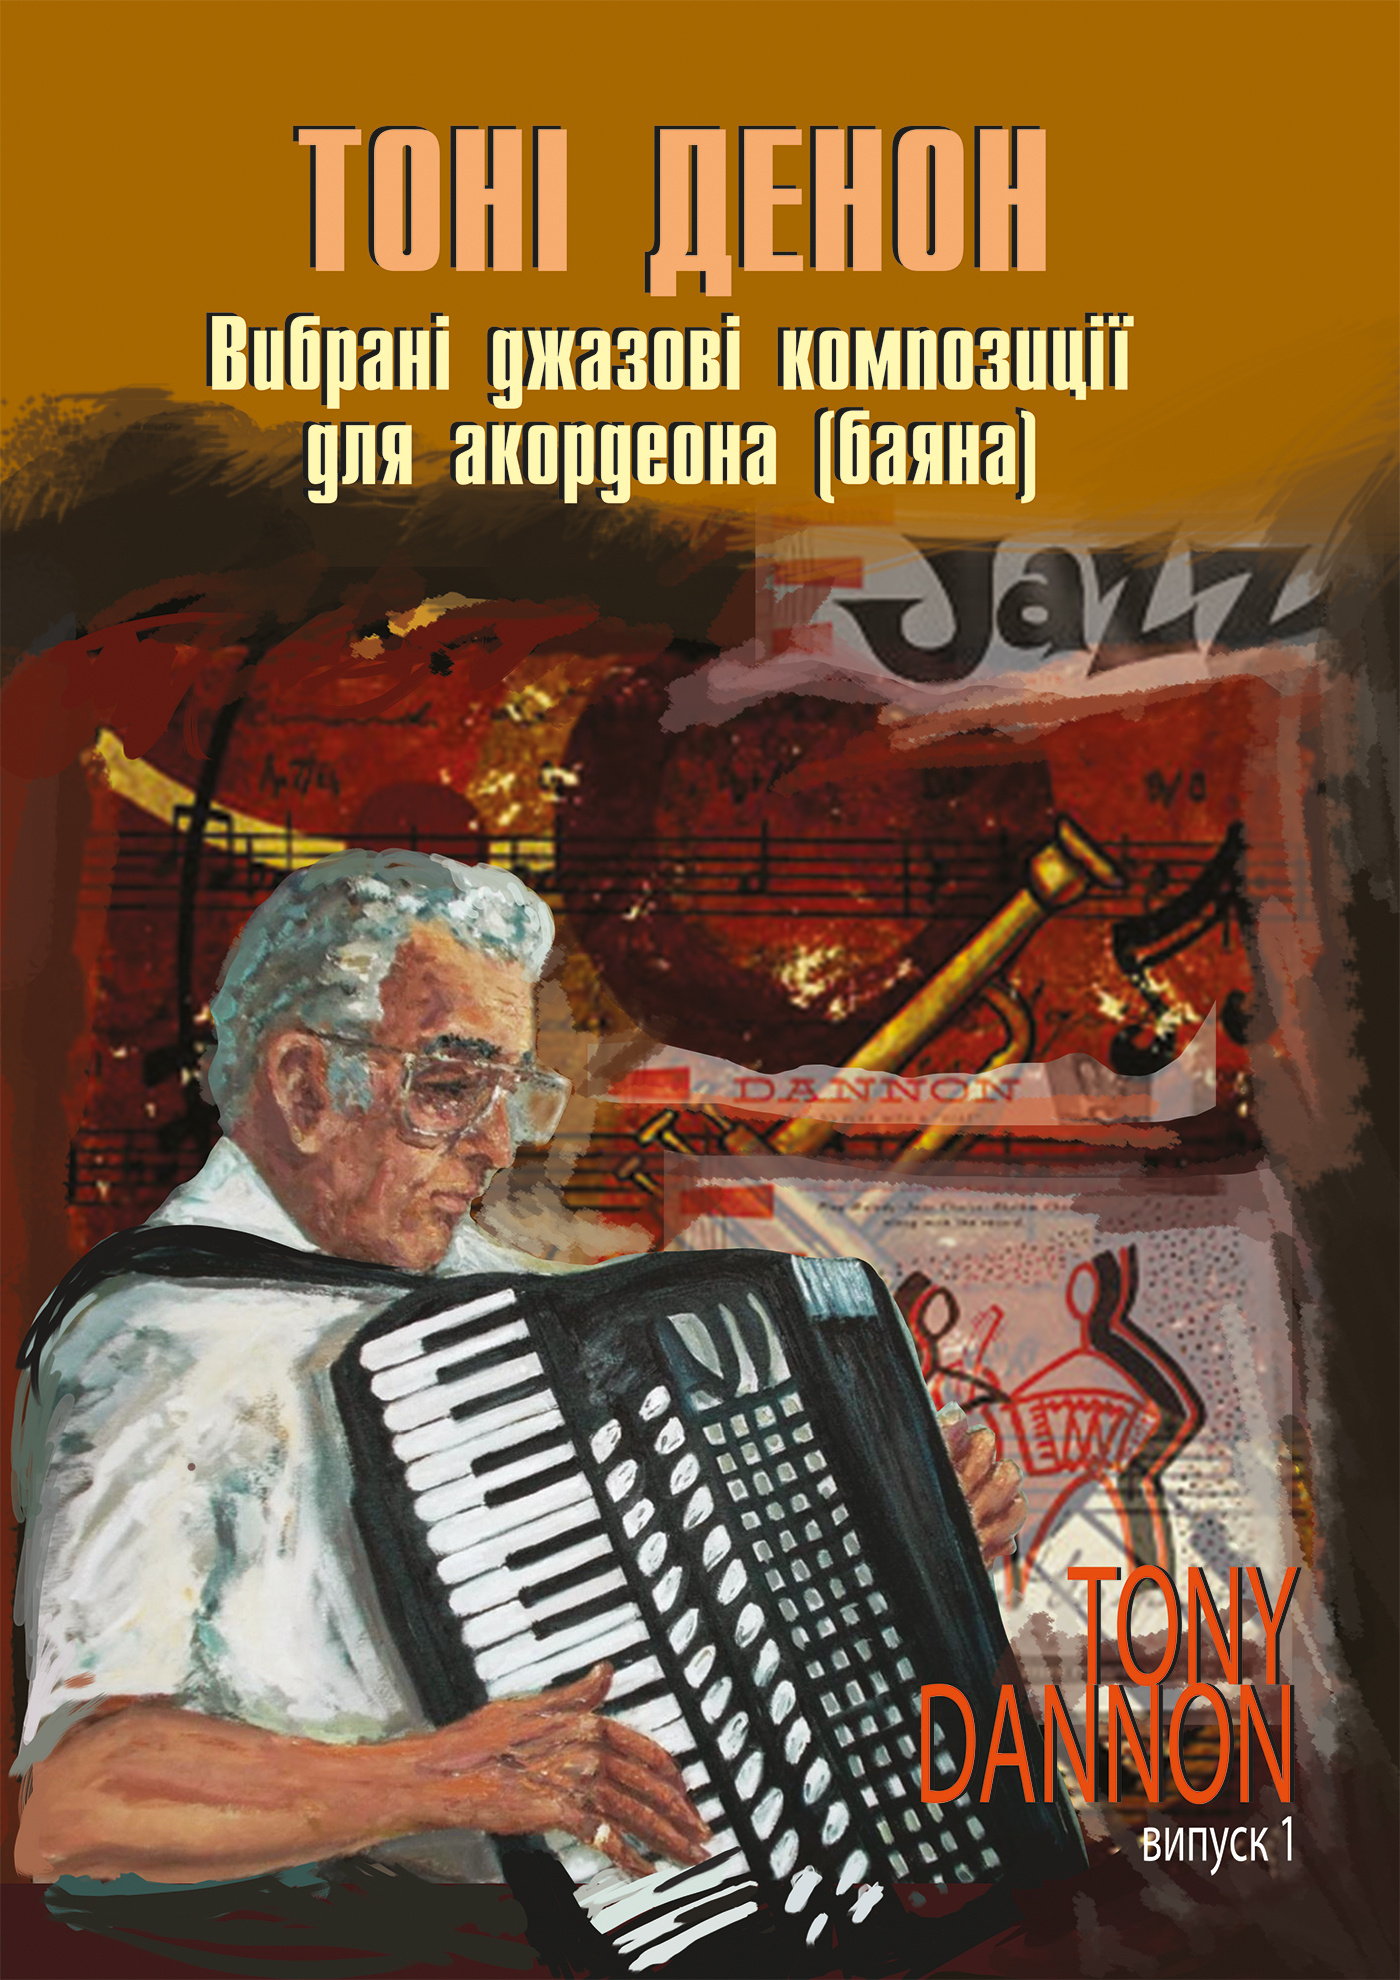 Вибрані джазові композиції для акордеона (баяна).. Випуск 1. Автор — Тоні Денон. 